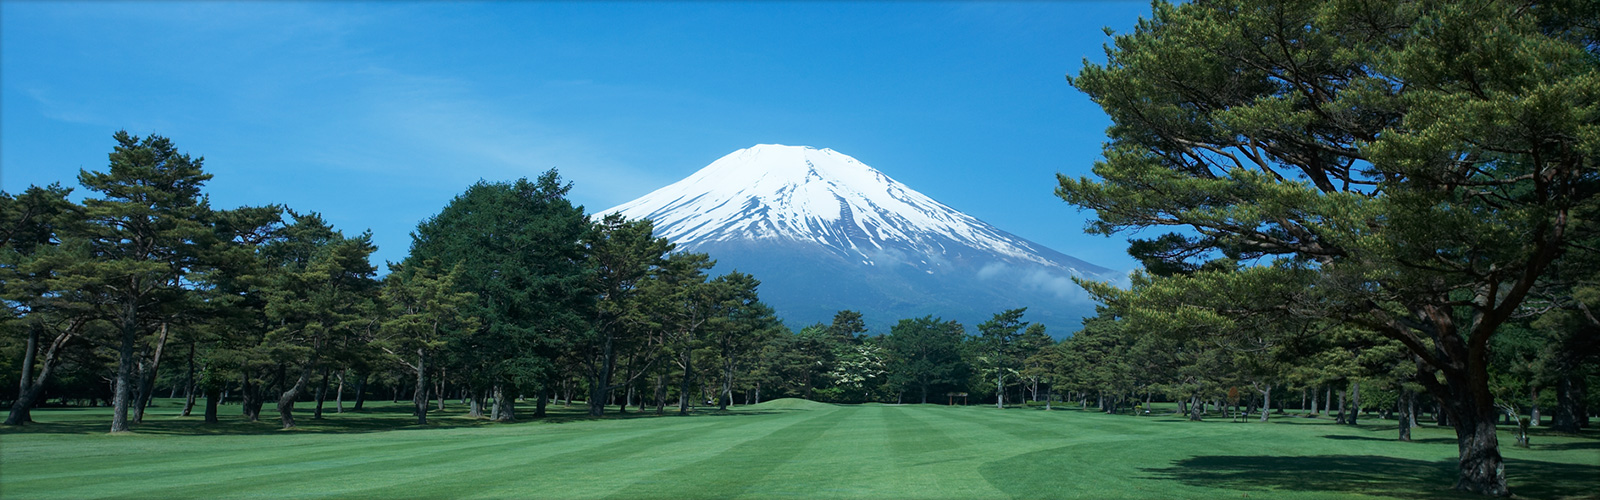 Fuji Golf Course